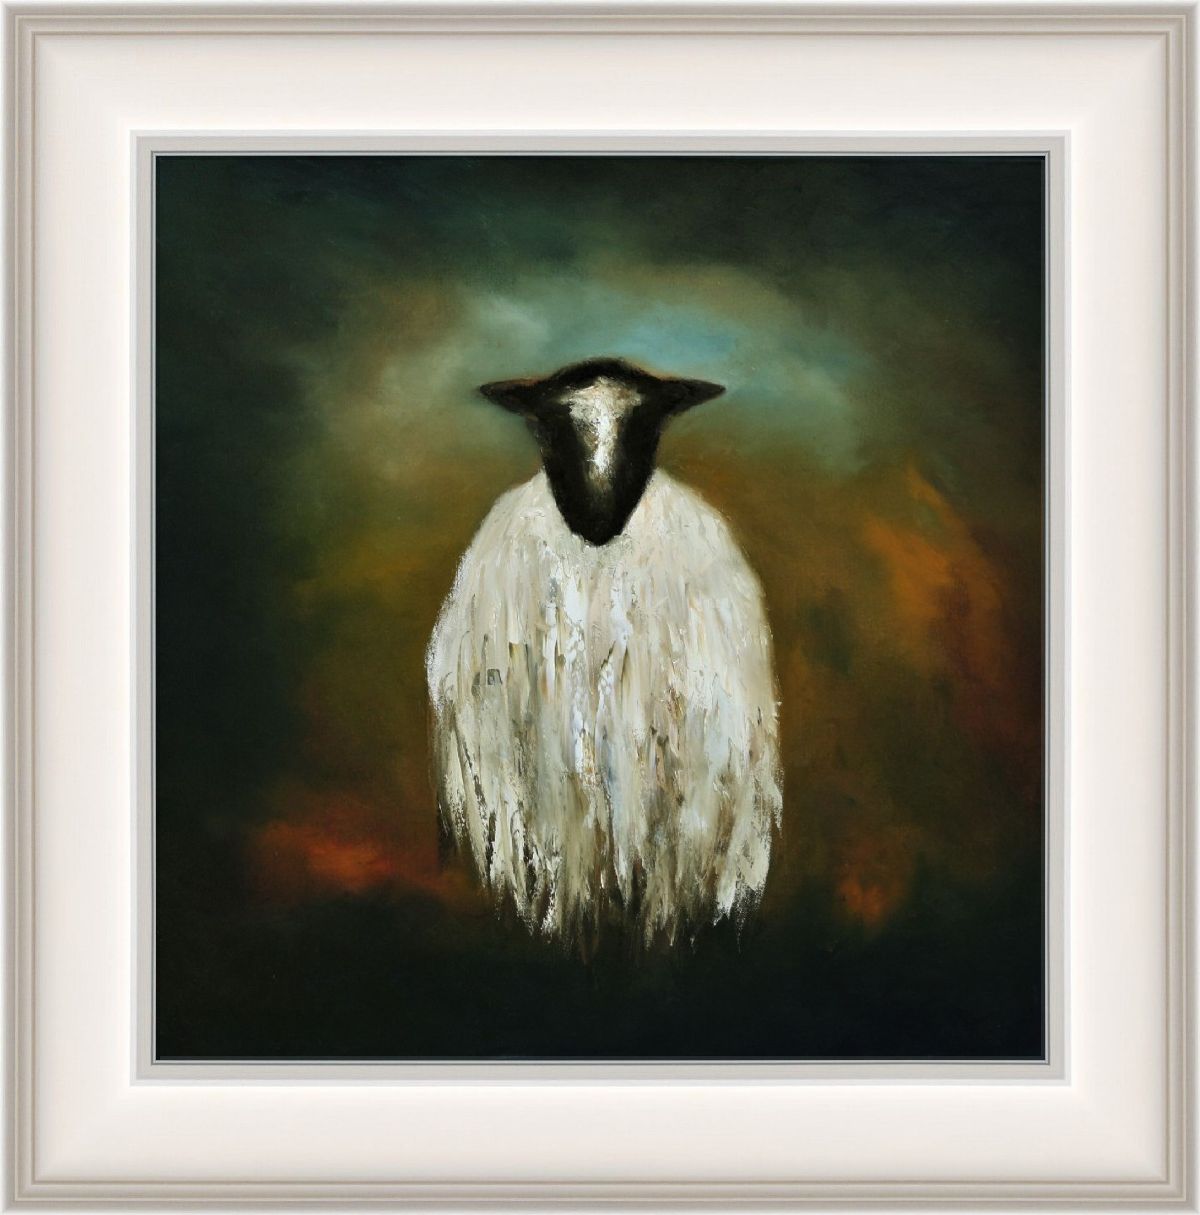 I Am sheep by Padraig McCaul